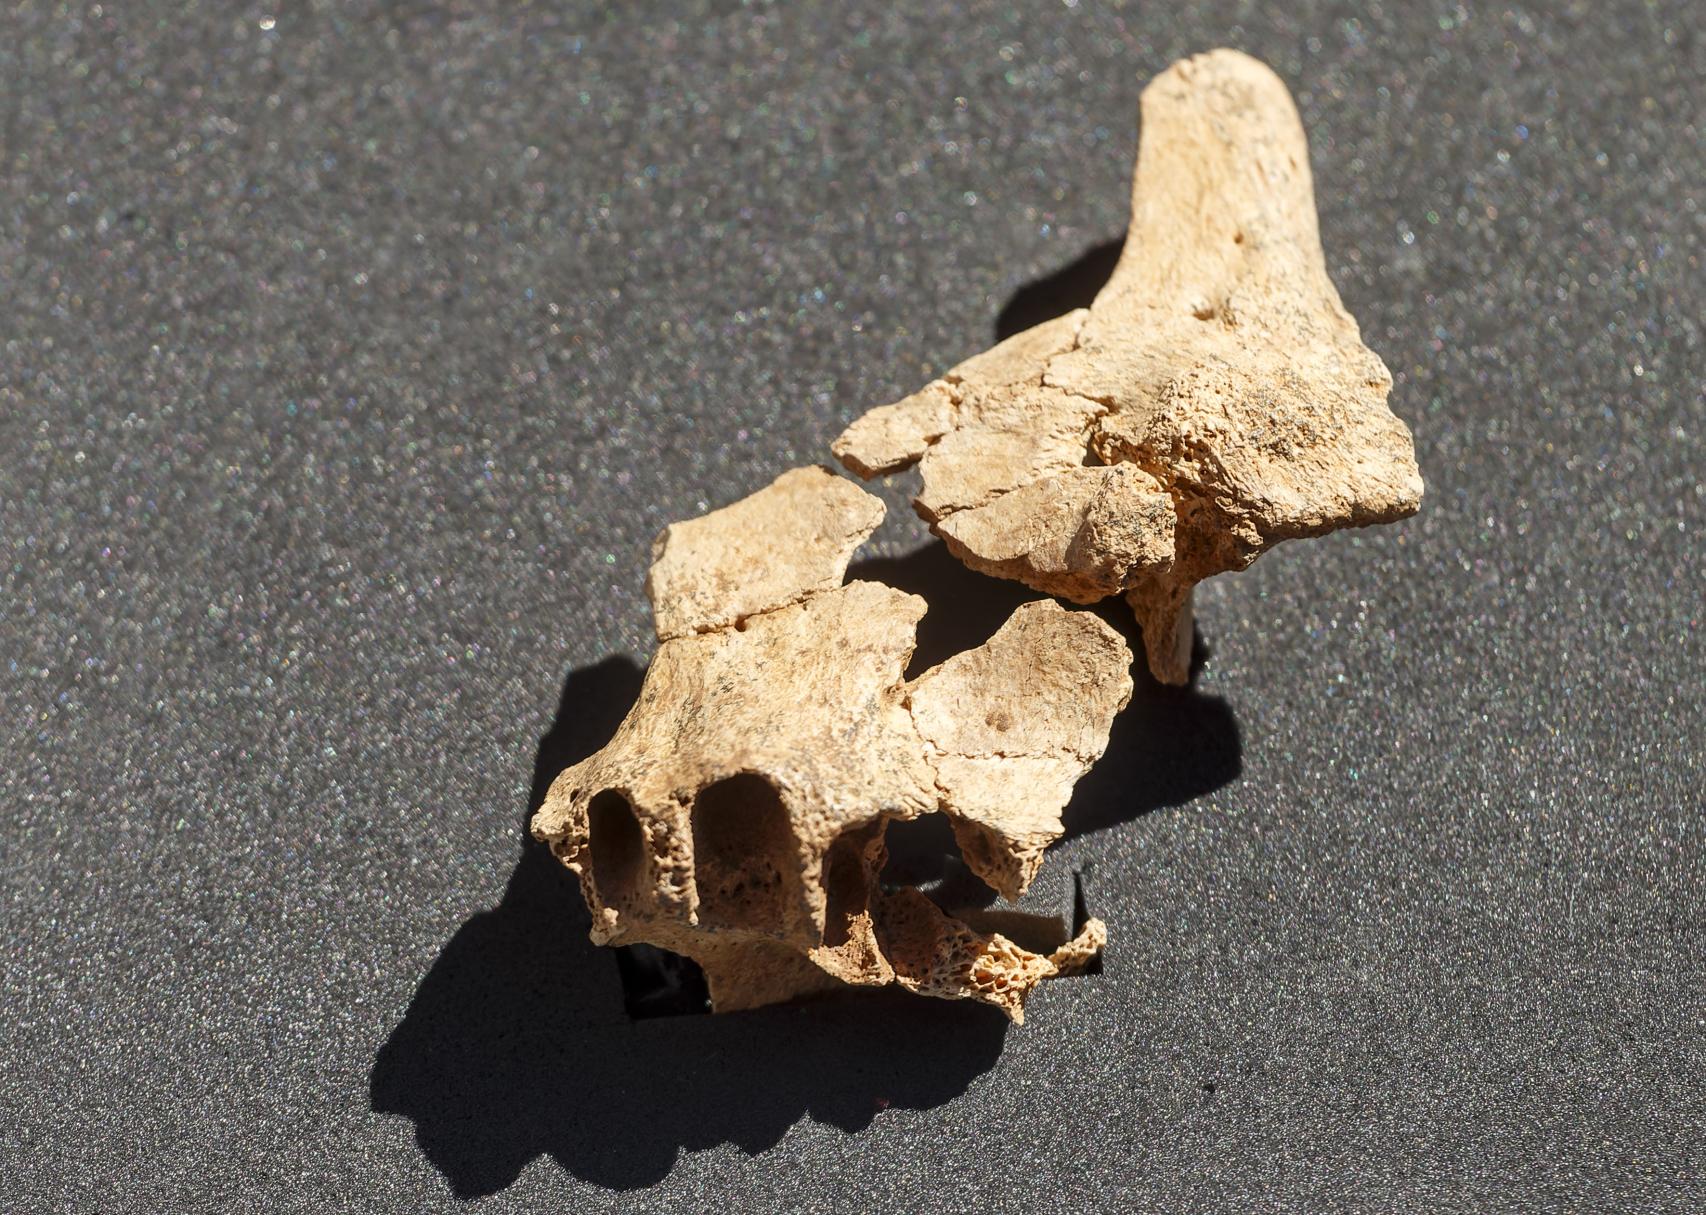 Detalle del fósil hallado en Atapuerca.